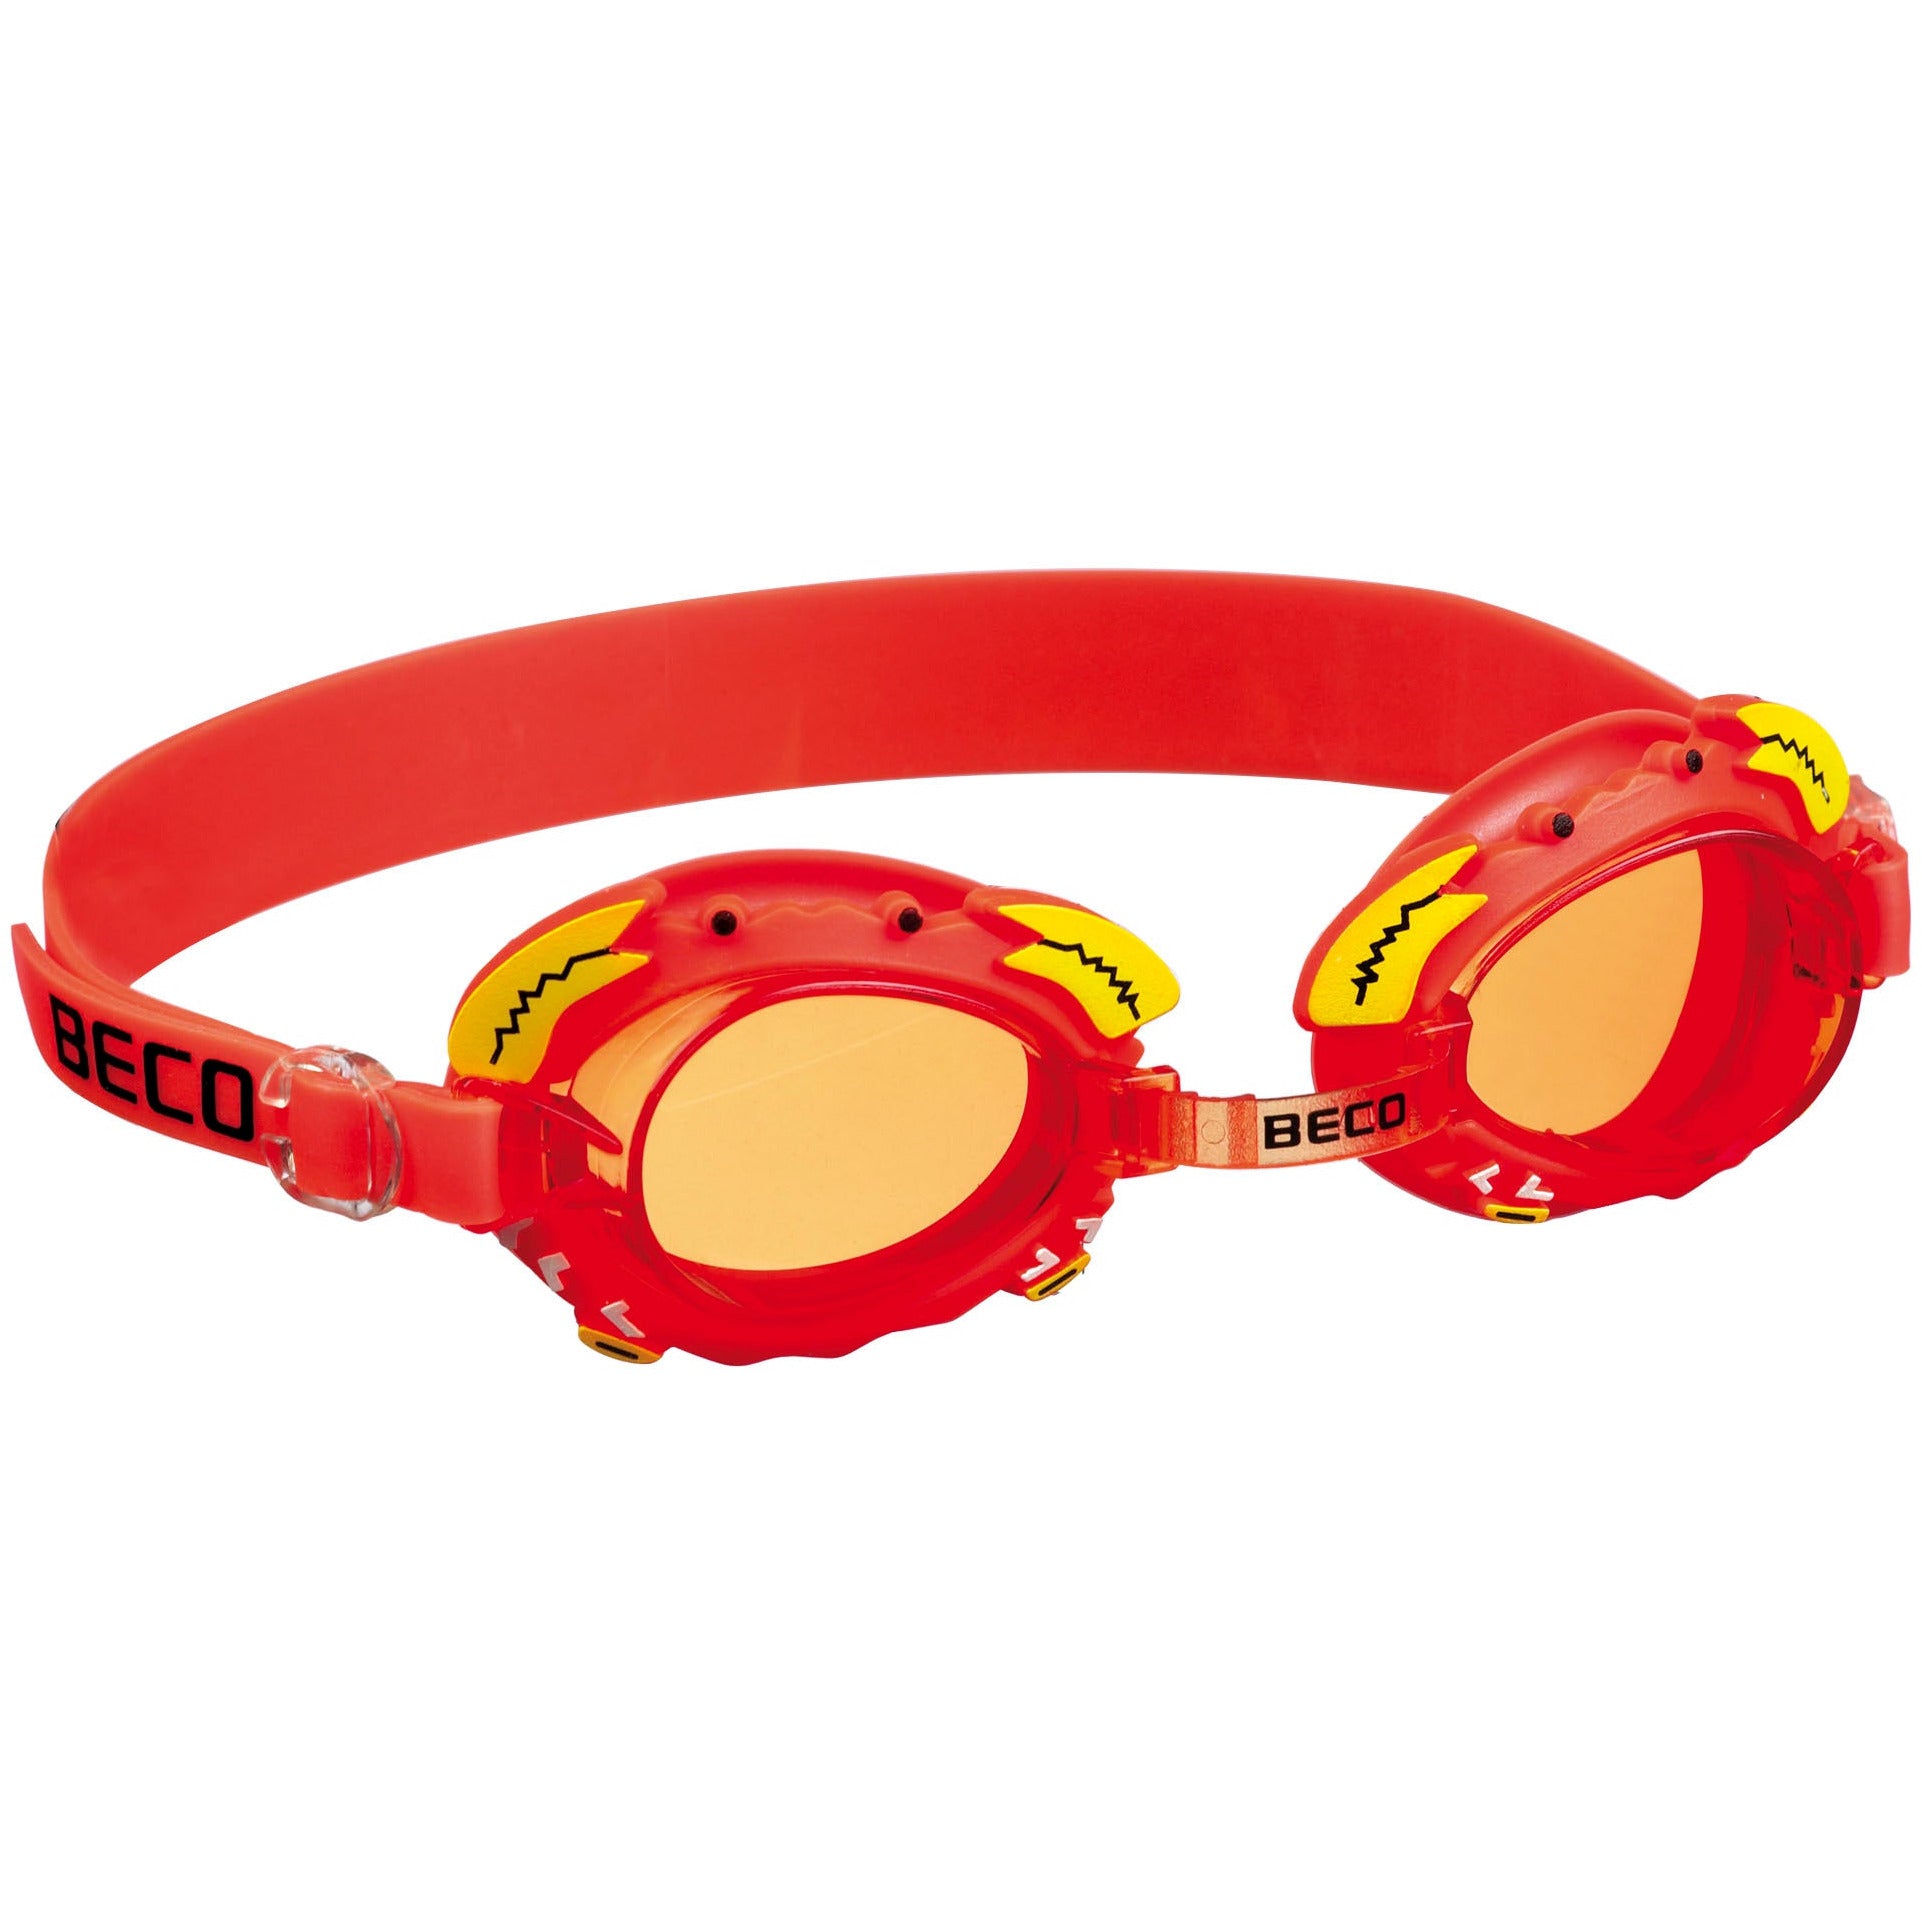 Billede af BECO "Palma" svømmebriller til børn 4 år+ - Rød